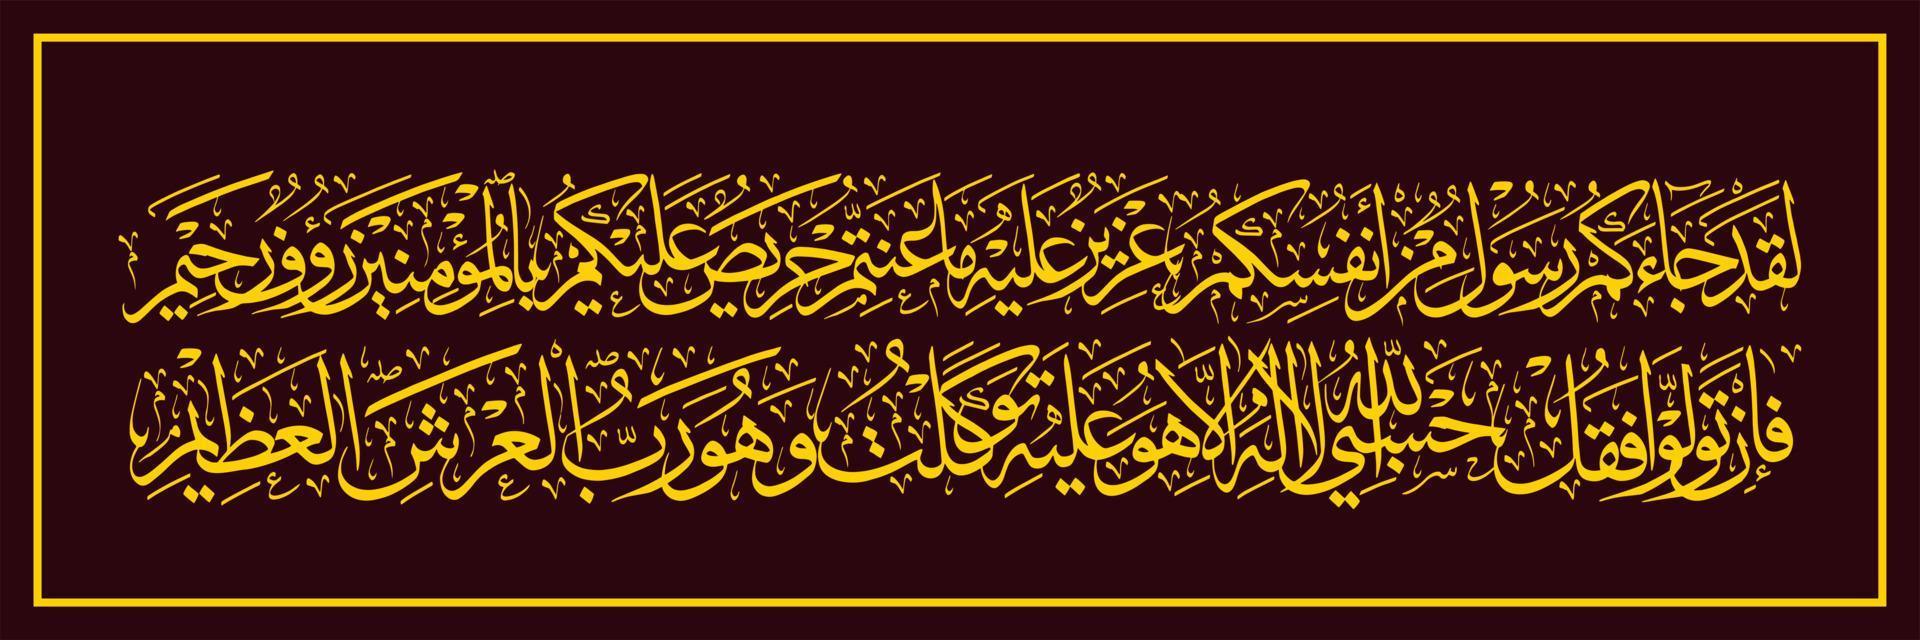 Arabische Kalligraphie, Koran-Sure bei Taubah Verse 128 129, Übersetzung dWahrlich, ein Bote ist von Ihrem eigenen Volk zu Ihnen gekommen vektor